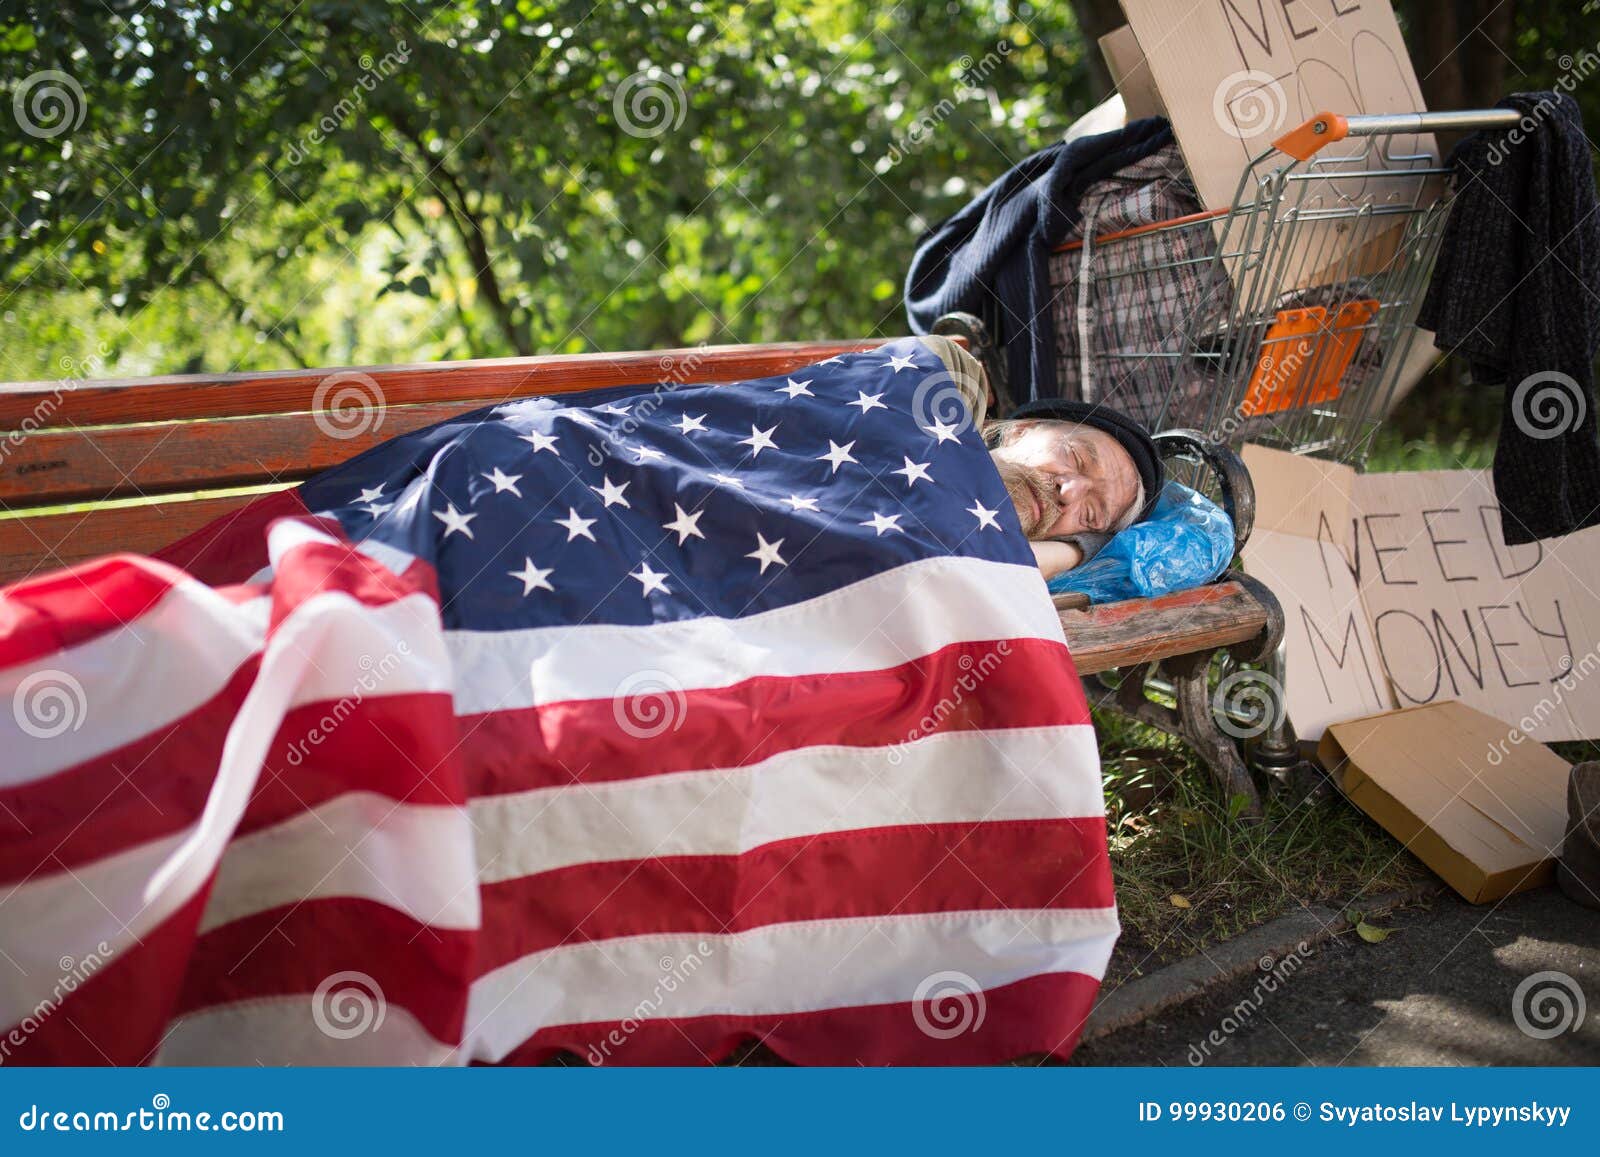 homeless-man-using-usa-flag-as-blanket-homeless-man-using-usa-flag-as-blanket-old-man-no-money-home-living-99930206.jpg